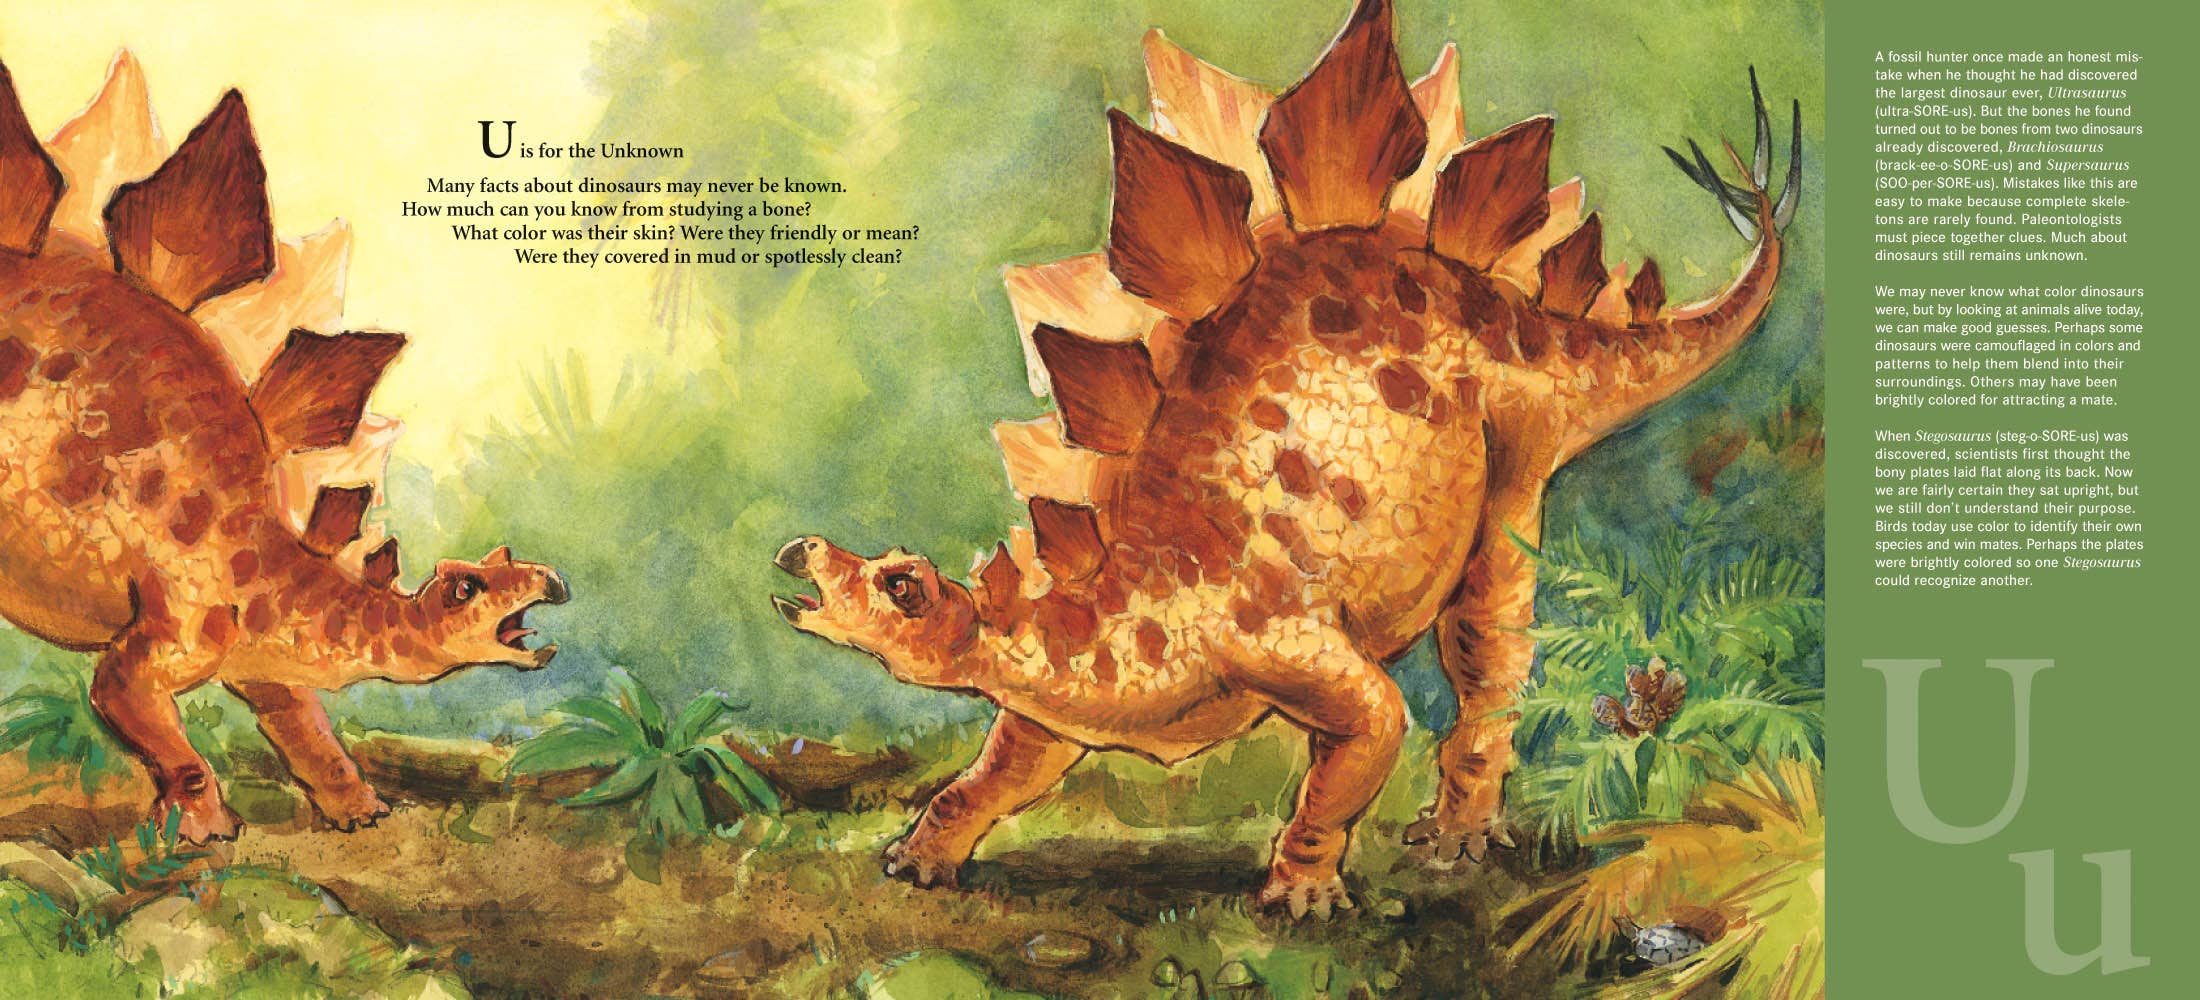 D is for Dinosaur: A Prehistoric Alphabet Book